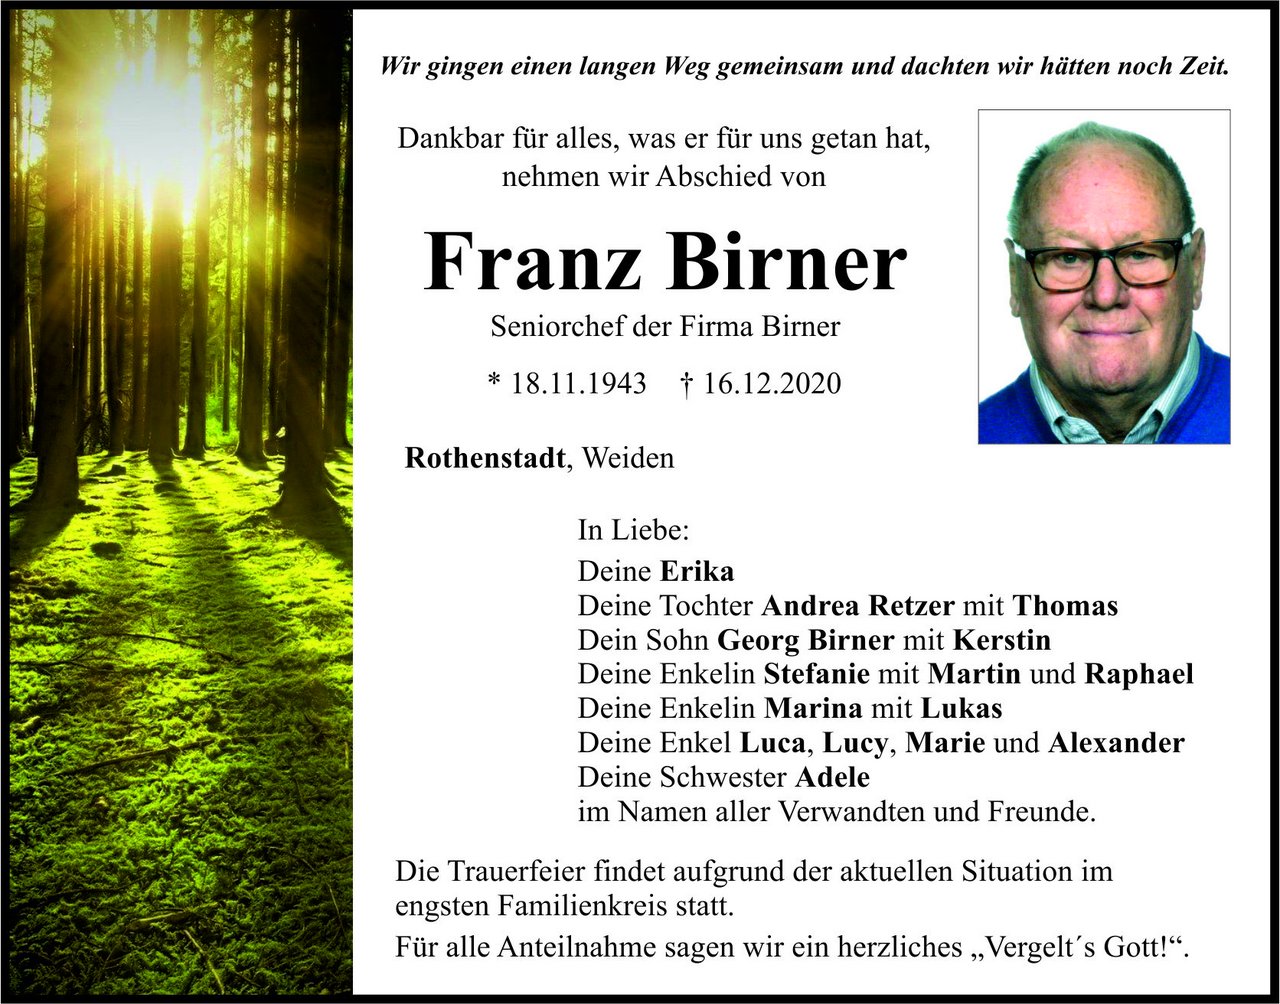 Traueranzeige Franz Birner, Rothenstadt